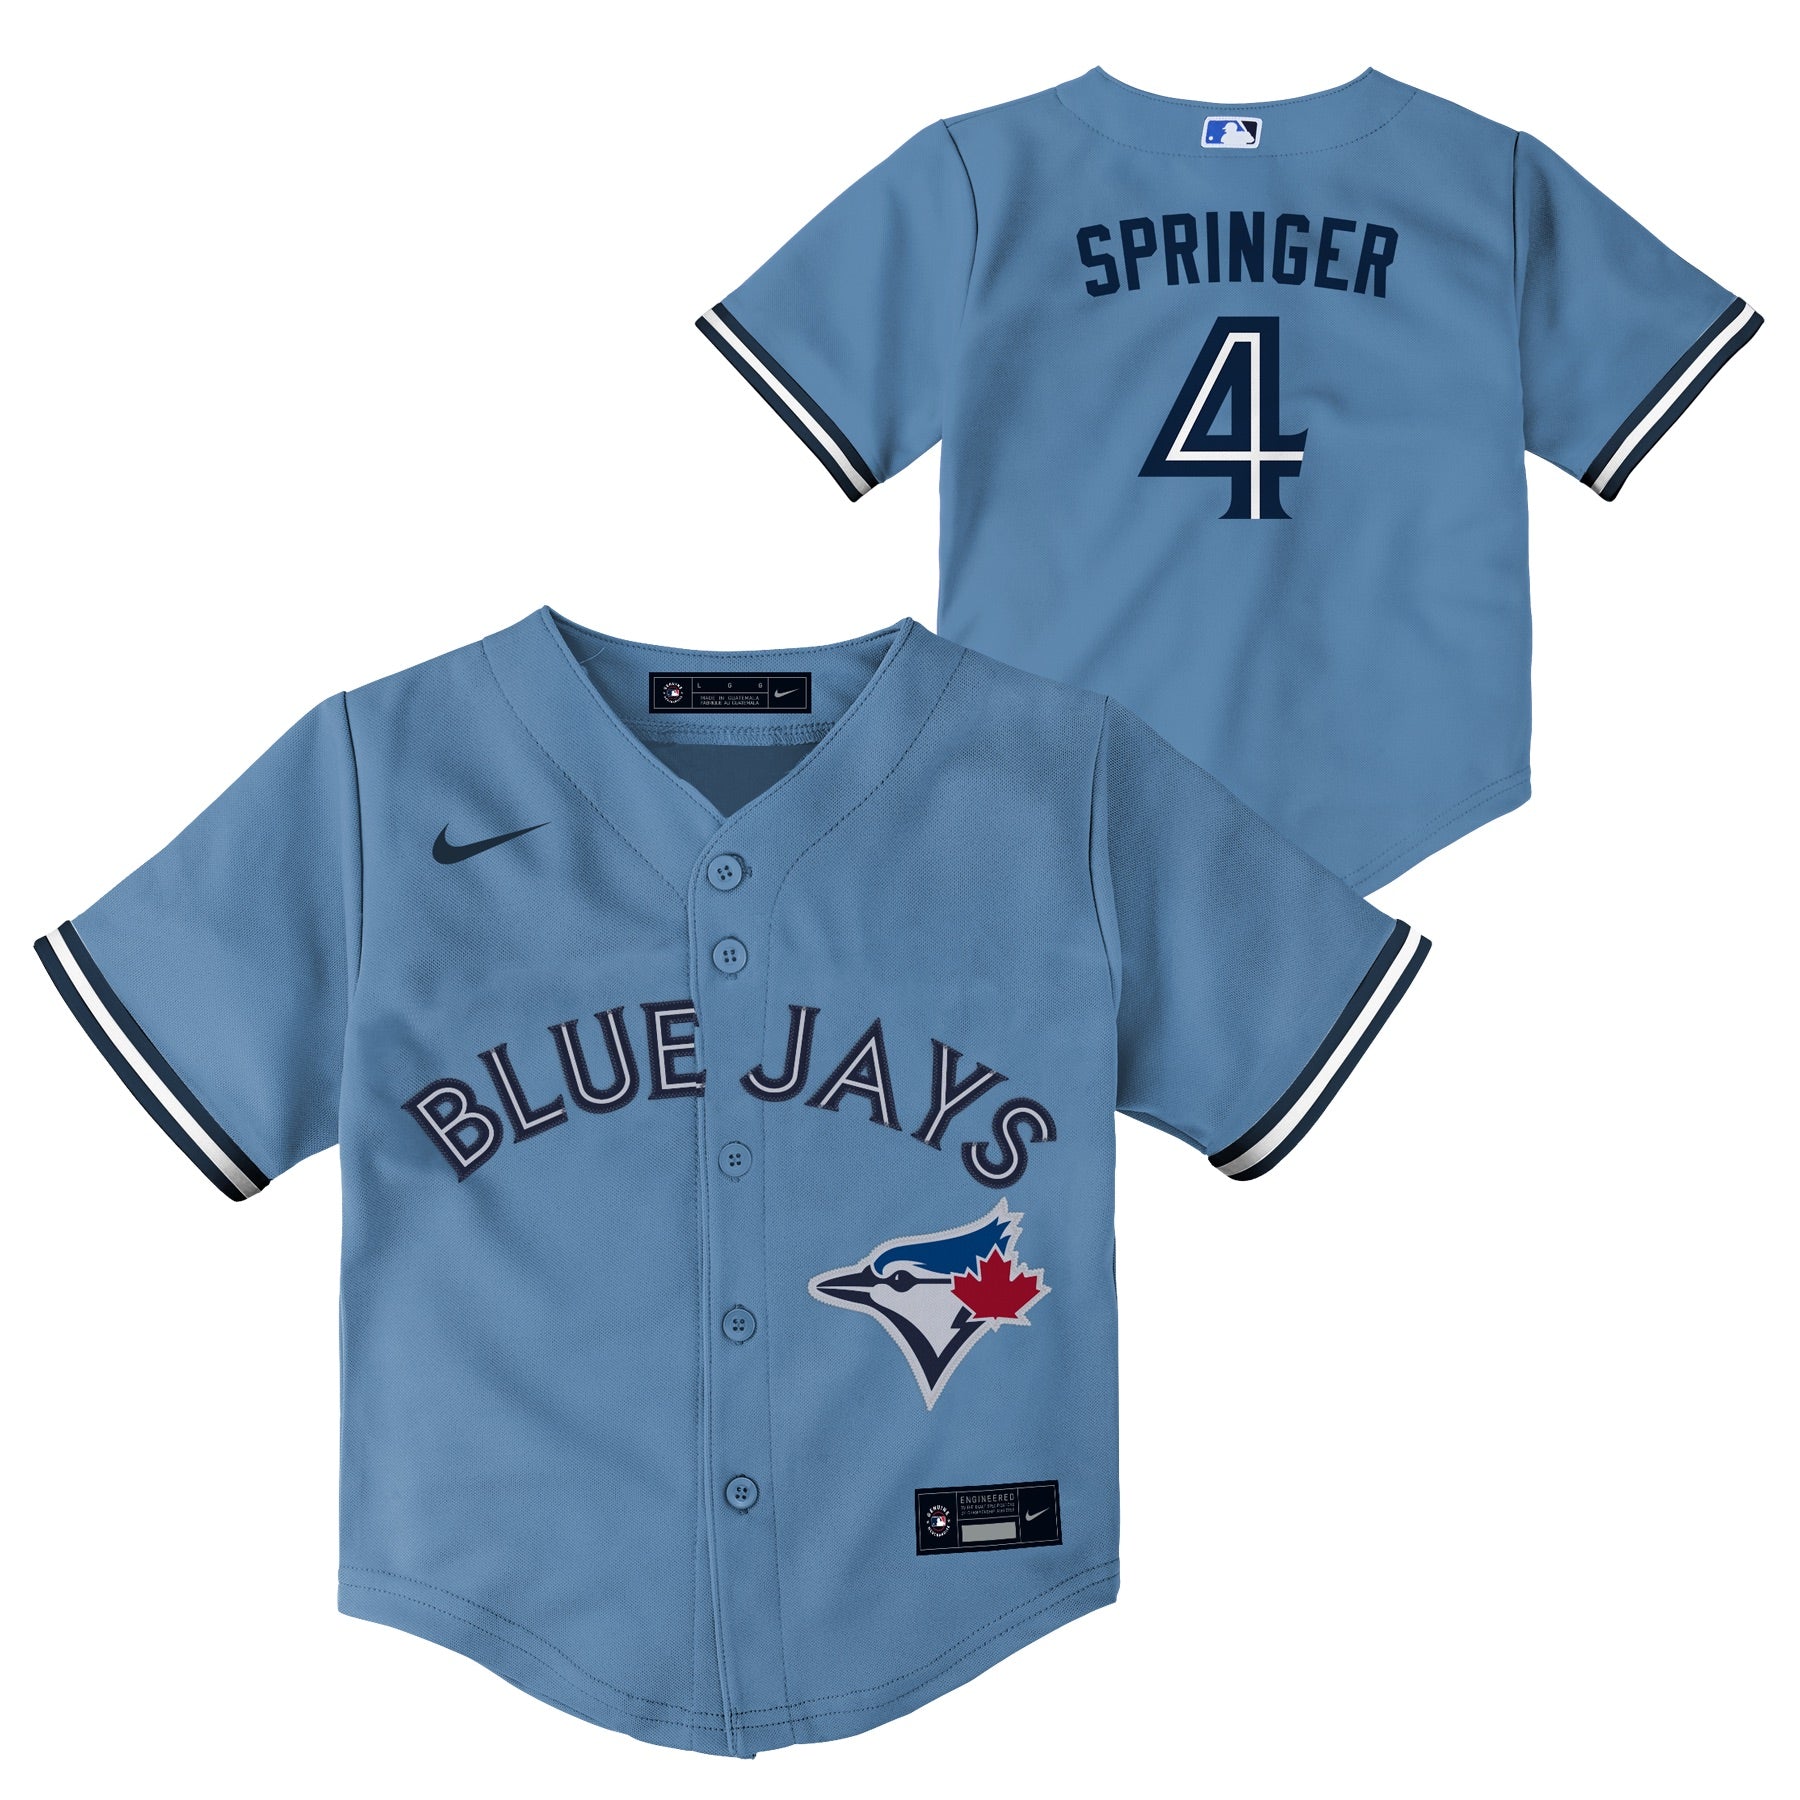 Toronto Blue Jays Gear, Blue Jays Jerseys, Toronto Pro Shop